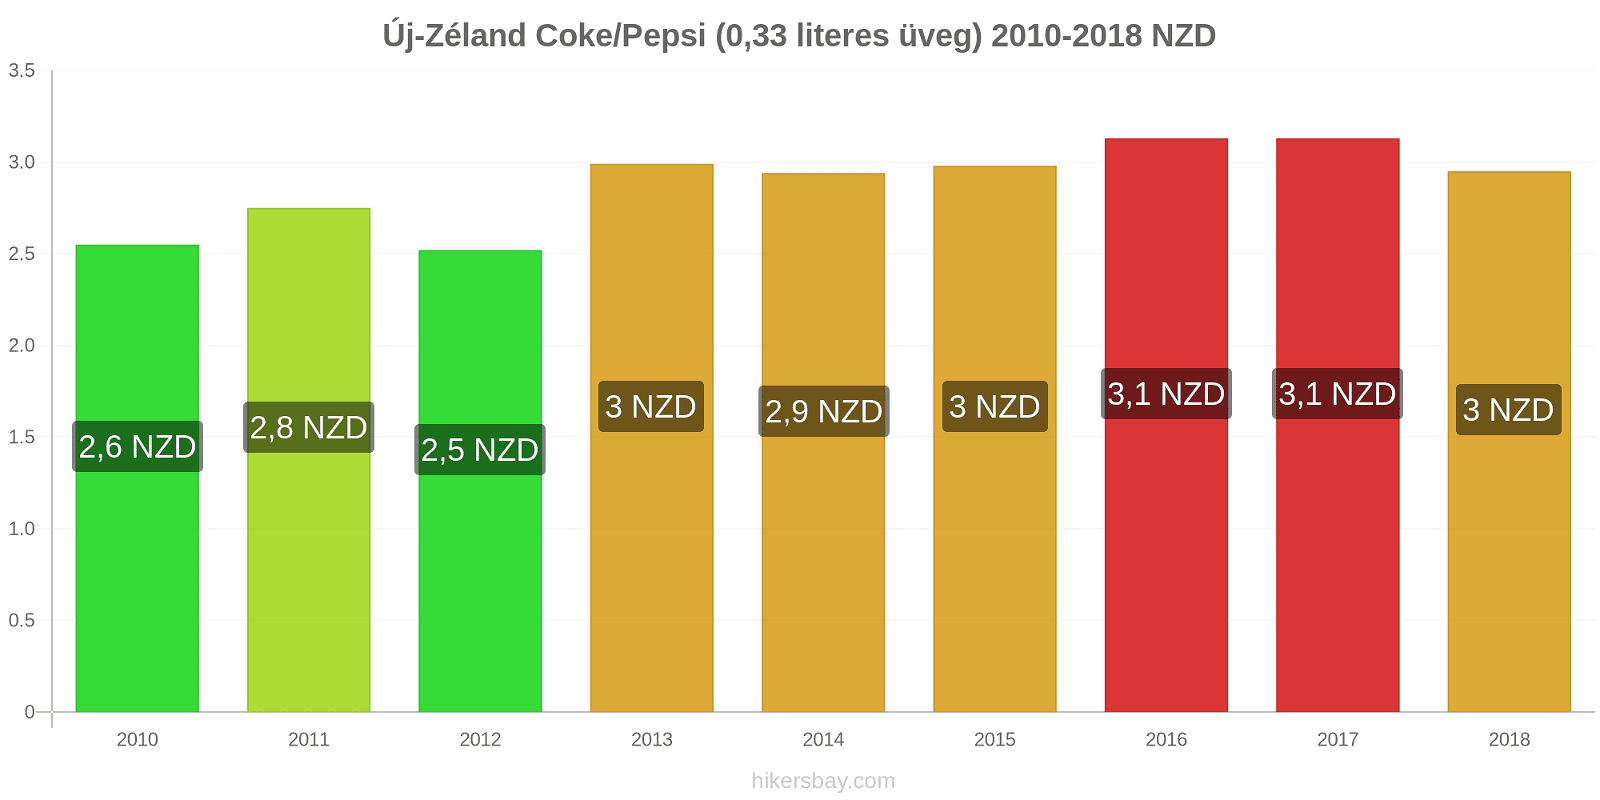 Új-Zéland ár változások Coca-Cola/Pepsi (0.33 literes üveg) hikersbay.com